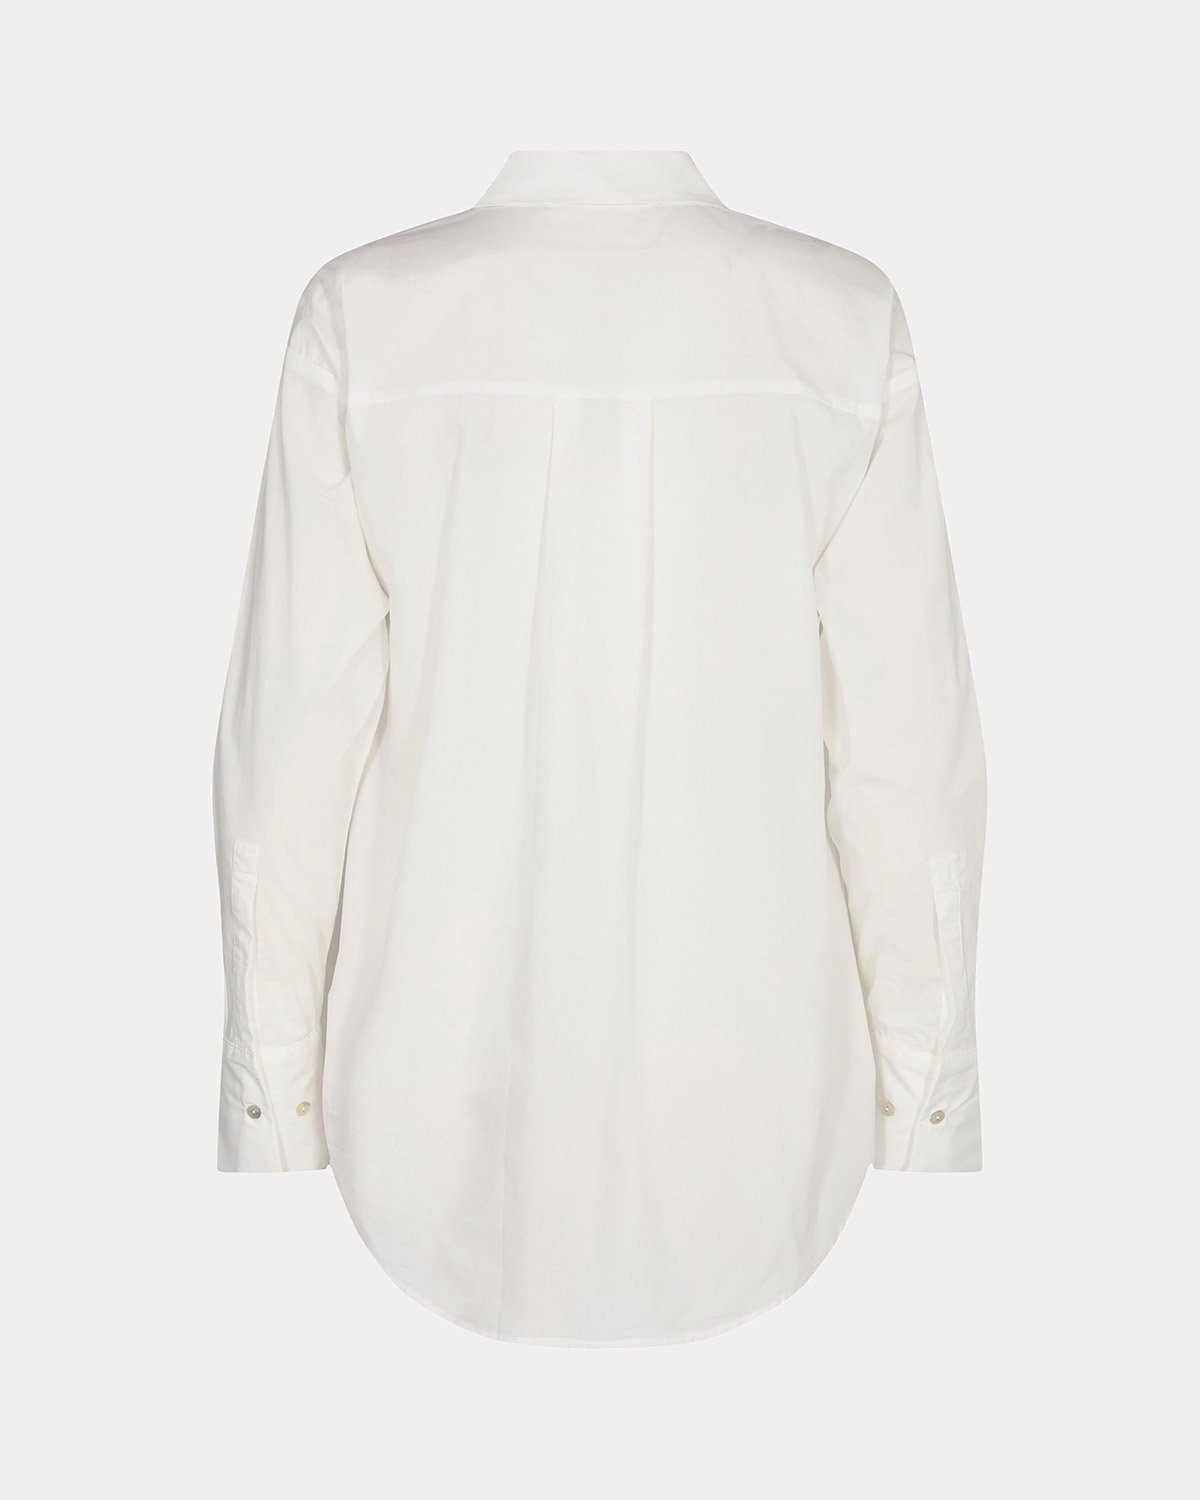 SNOS417-Shirt-Antique White